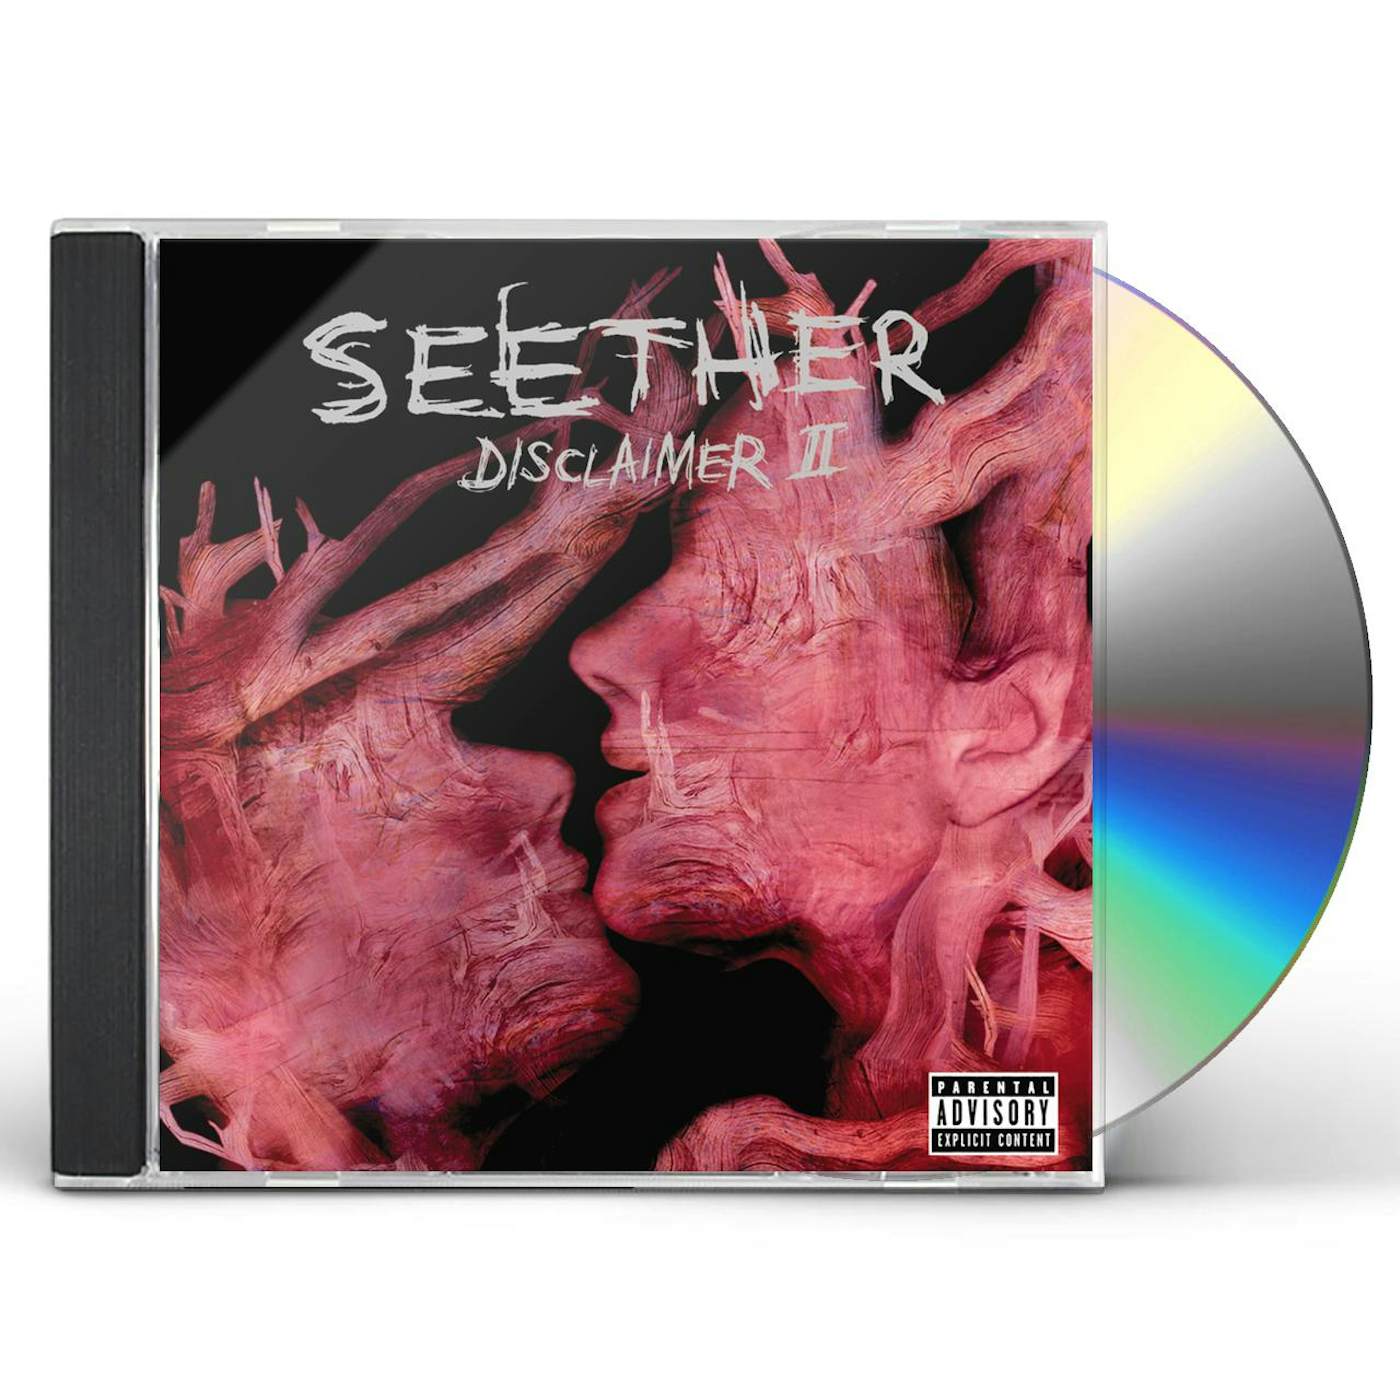 Seether DISCLAIMER II CD